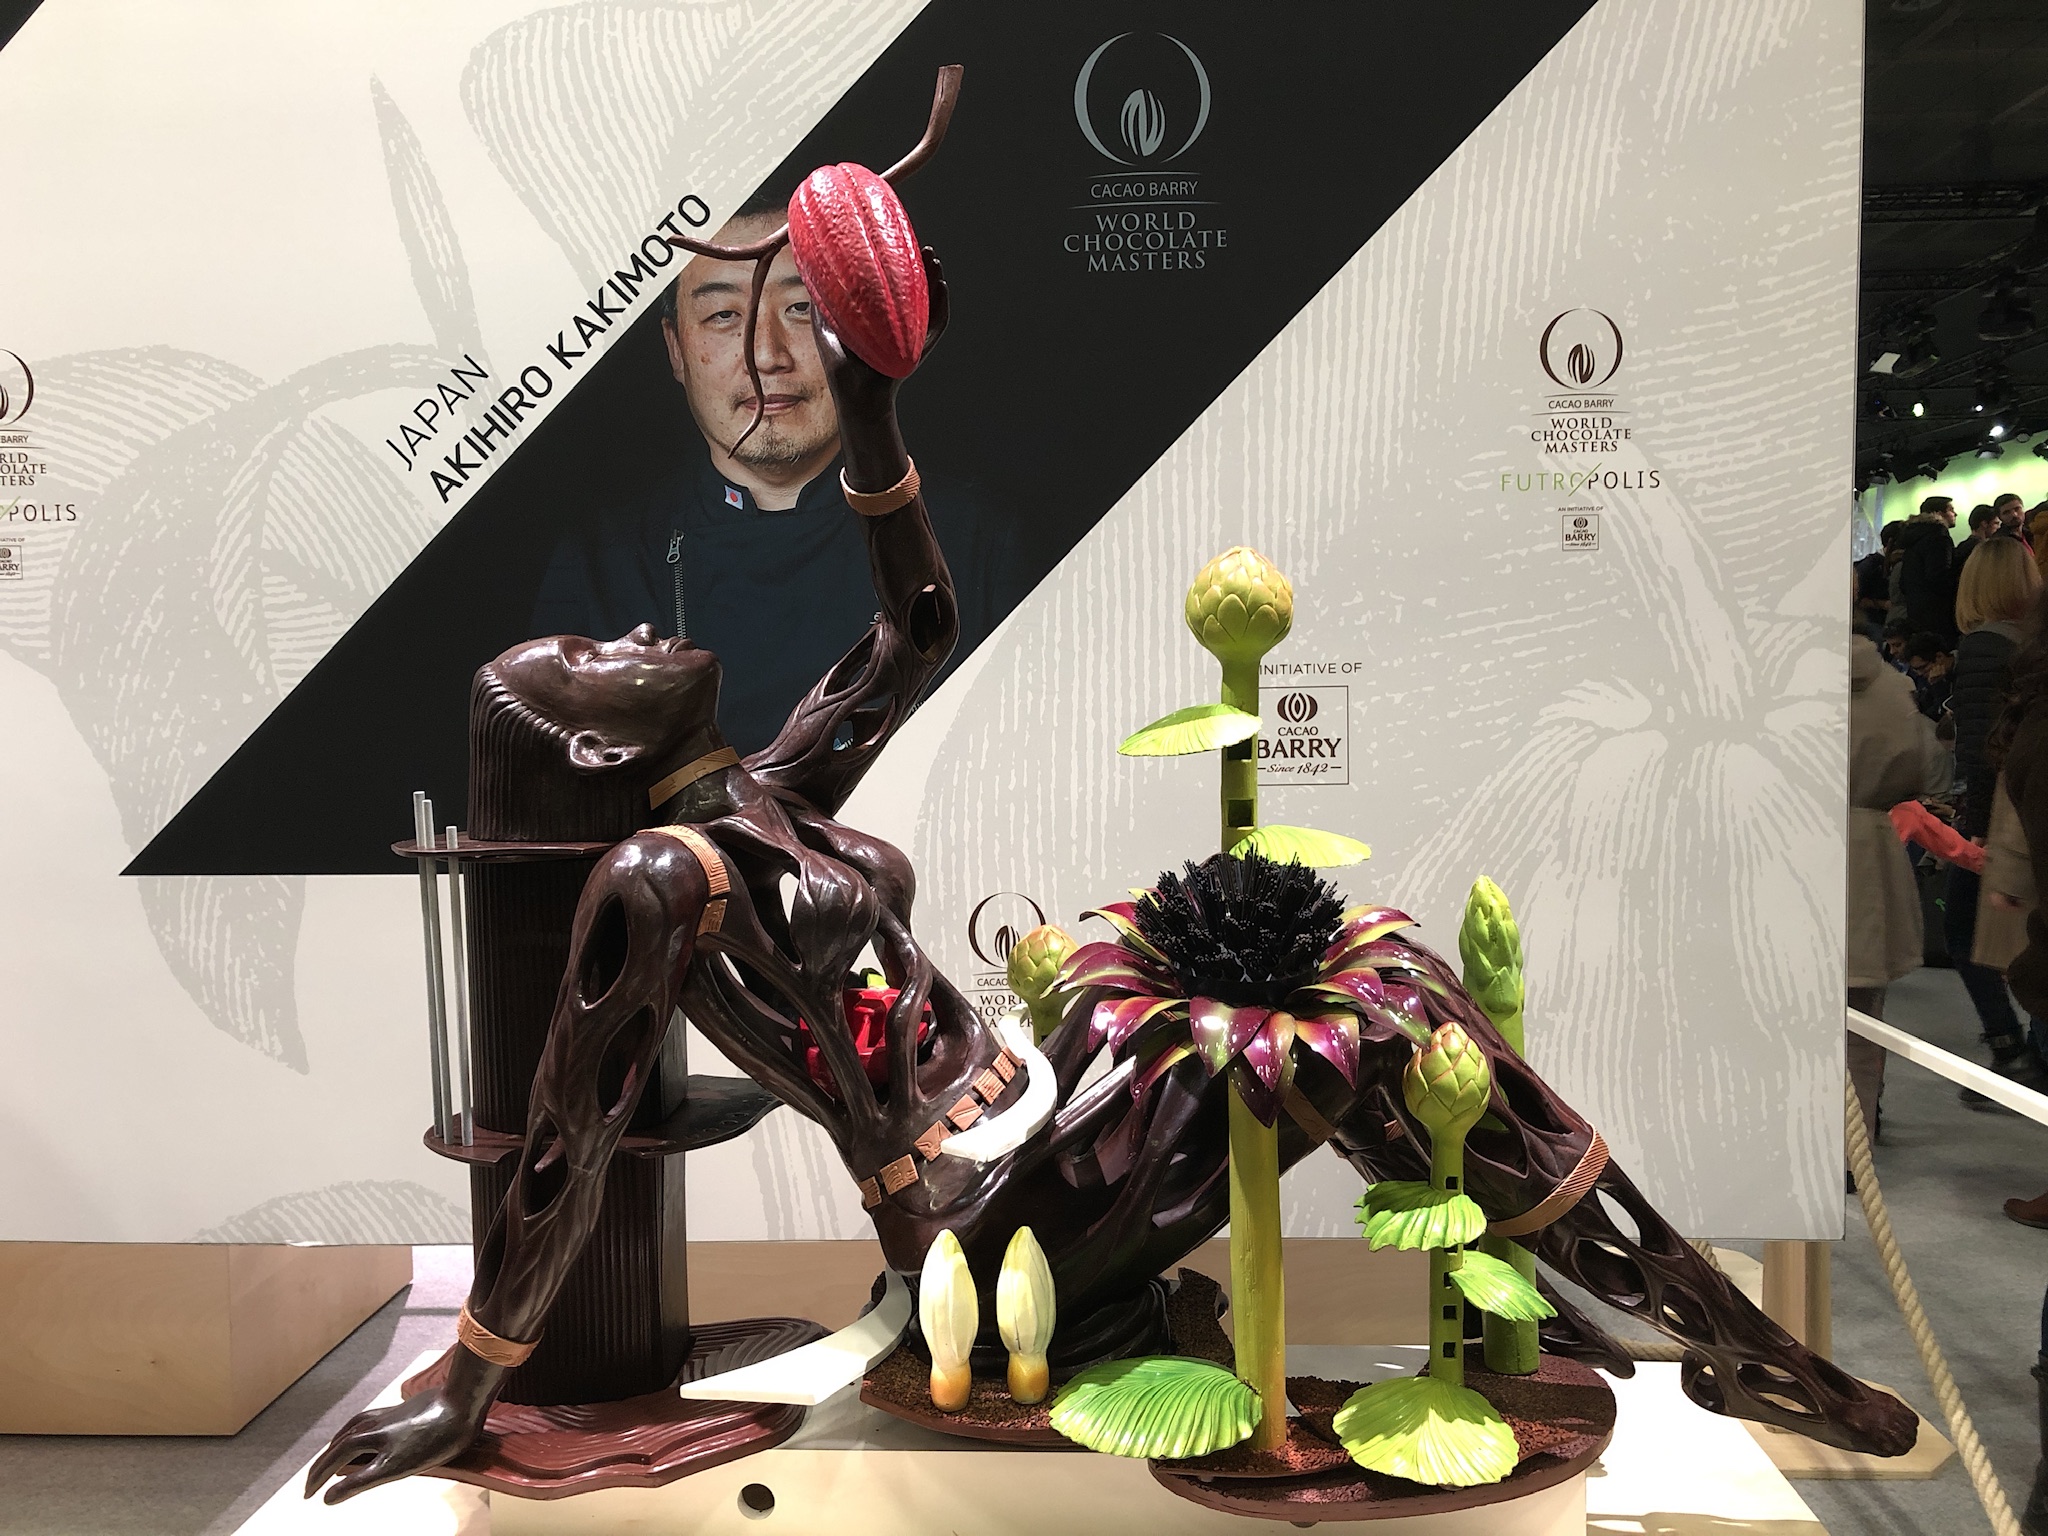 「ワールド チョコレート マスターズ2018」で、日本代表の垣本晃宏氏が完成させたチョコレートの大型工芸作品